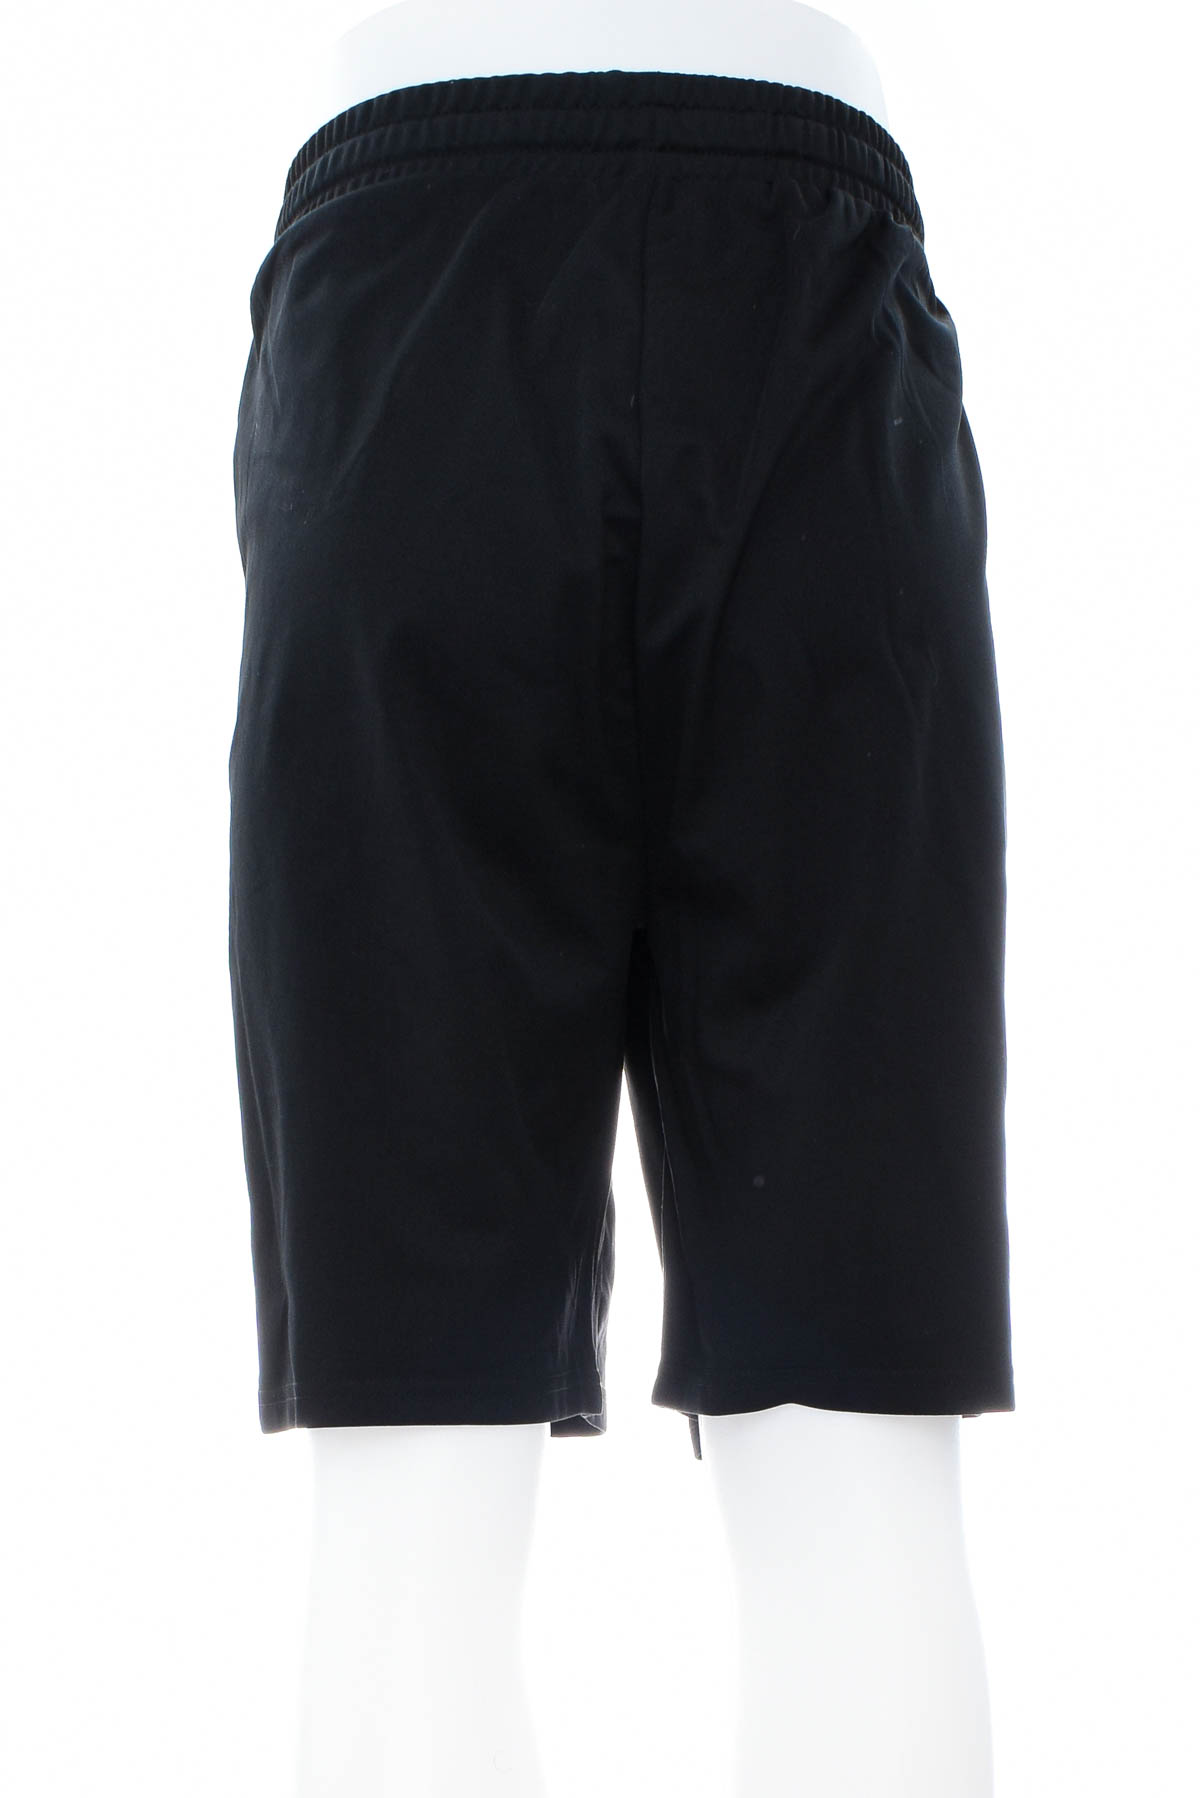 Men's shorts - Redmax - 1